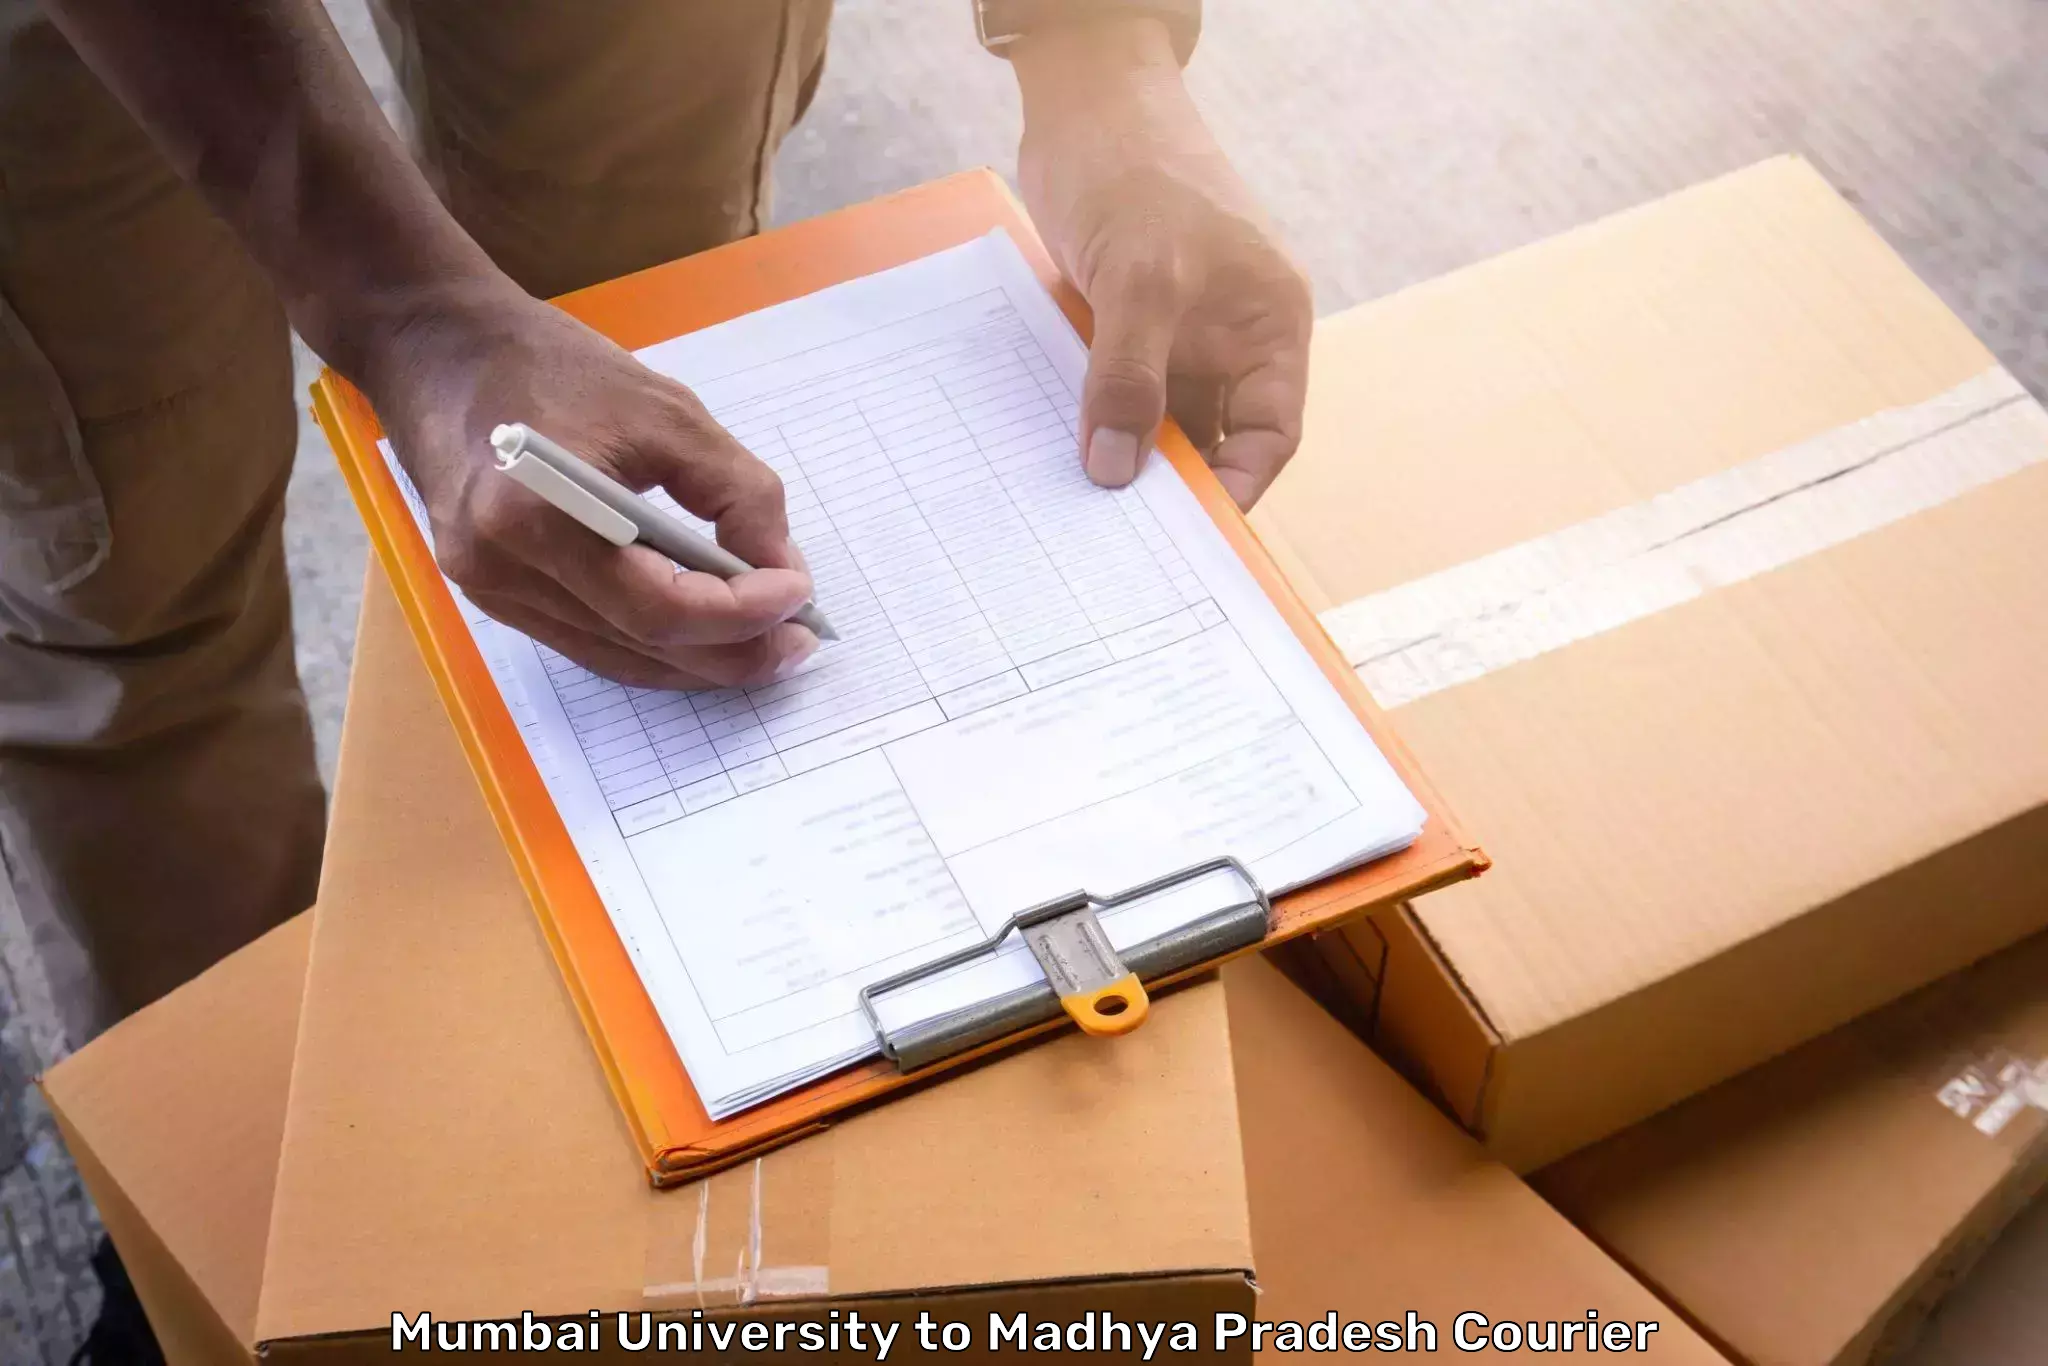 Luggage transport deals Mumbai University to Rehli